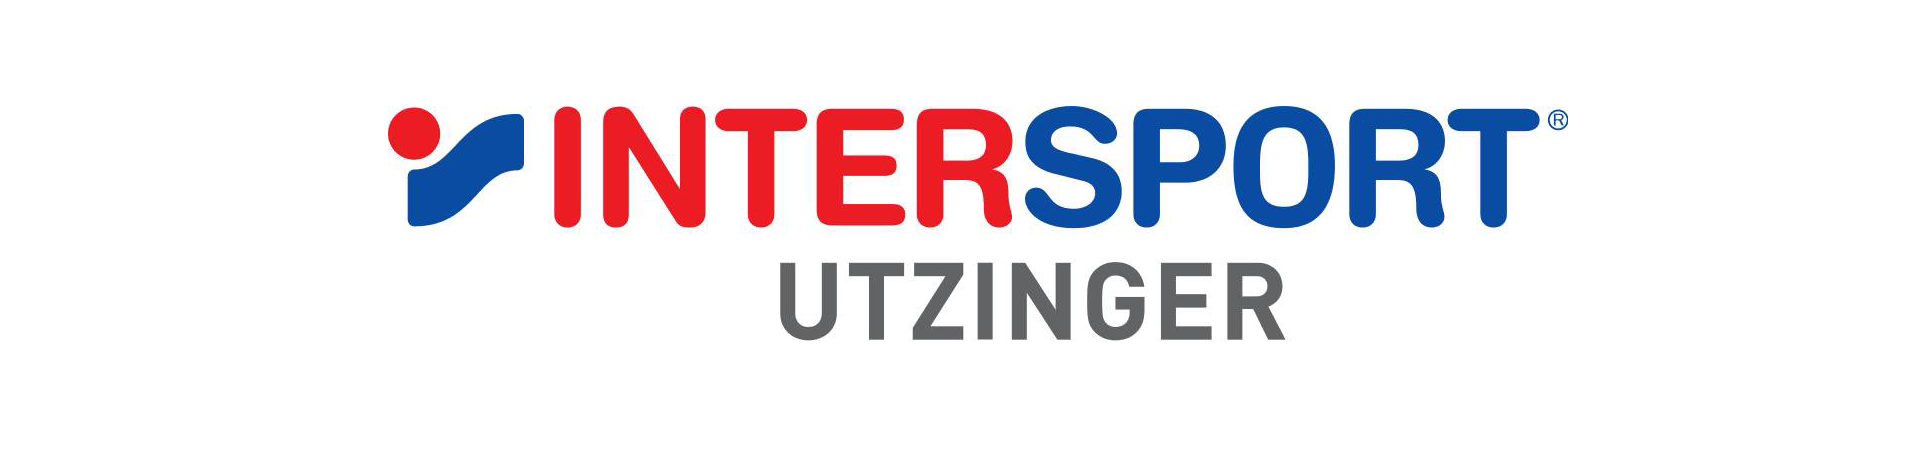 Intersport Utzinger Rennsport     